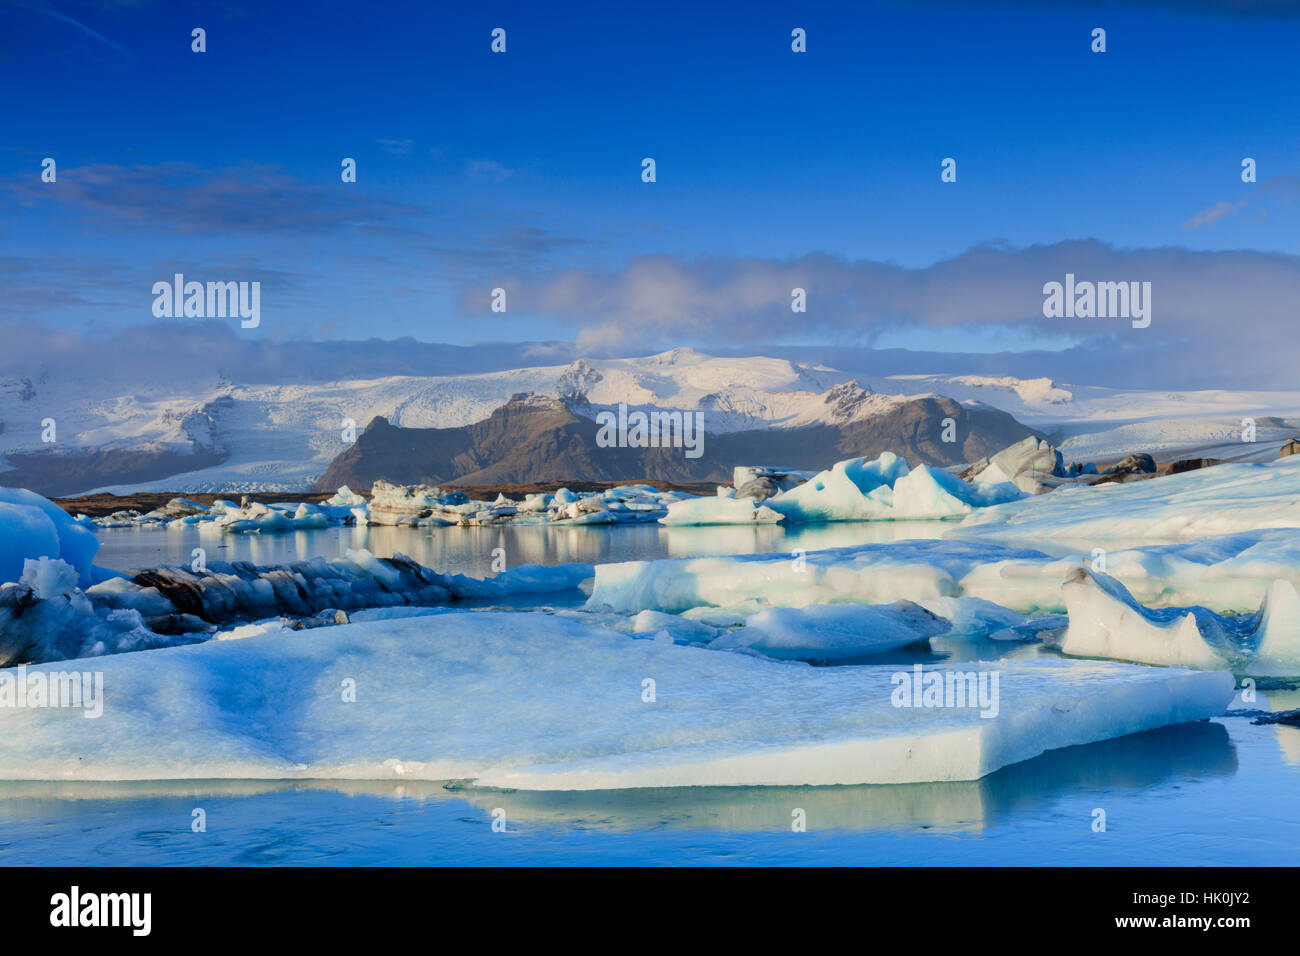 Icebergs in the Jokulsarlon glacial lake in Vatnajokull National Park in southeast Iceland, Polar Regions Stock Photo